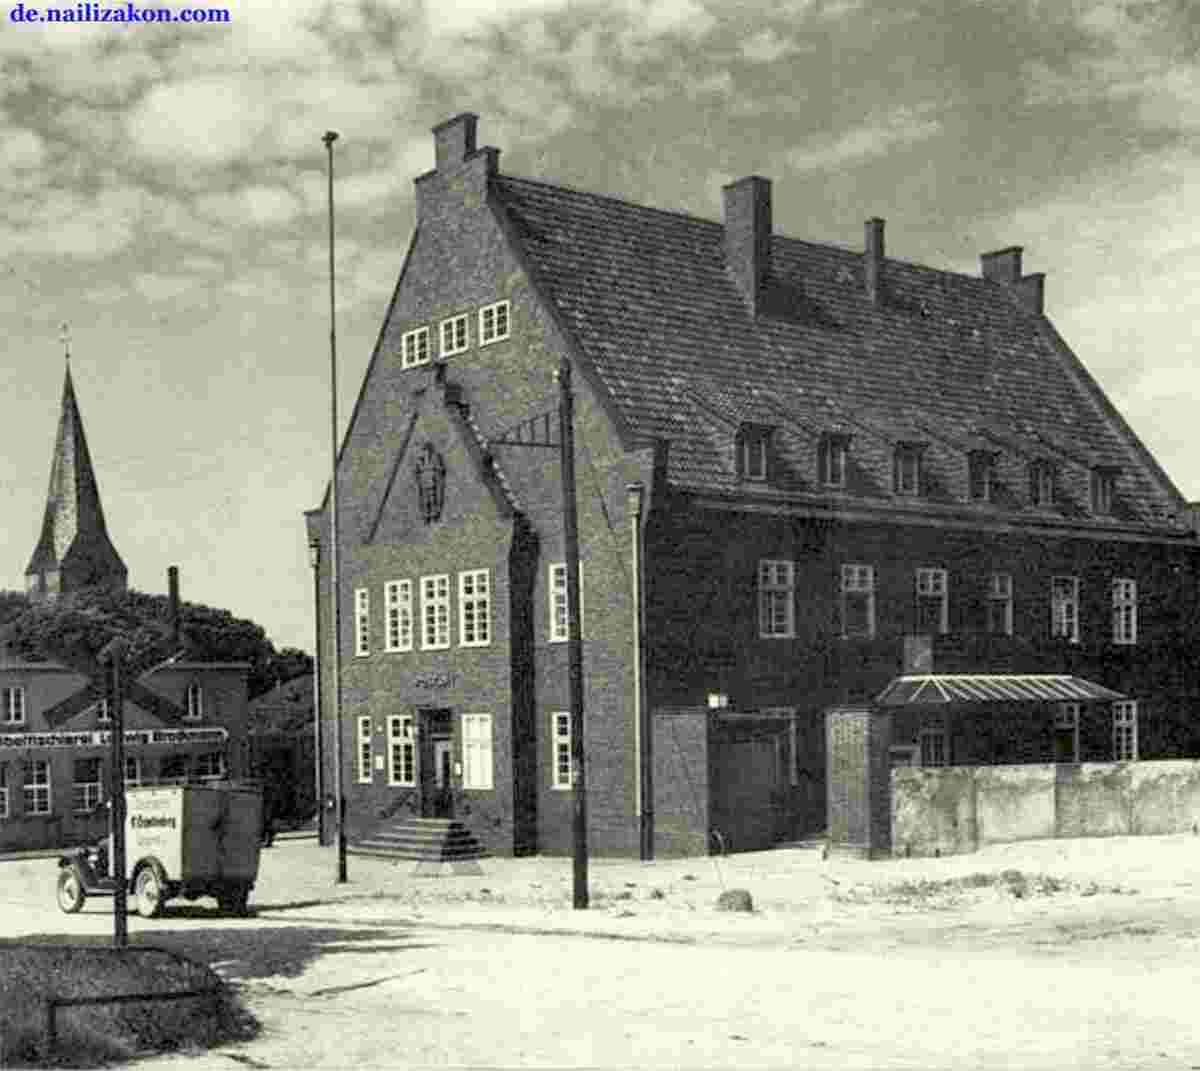 Lengerich. Postamt an der Bergstraße, 1934